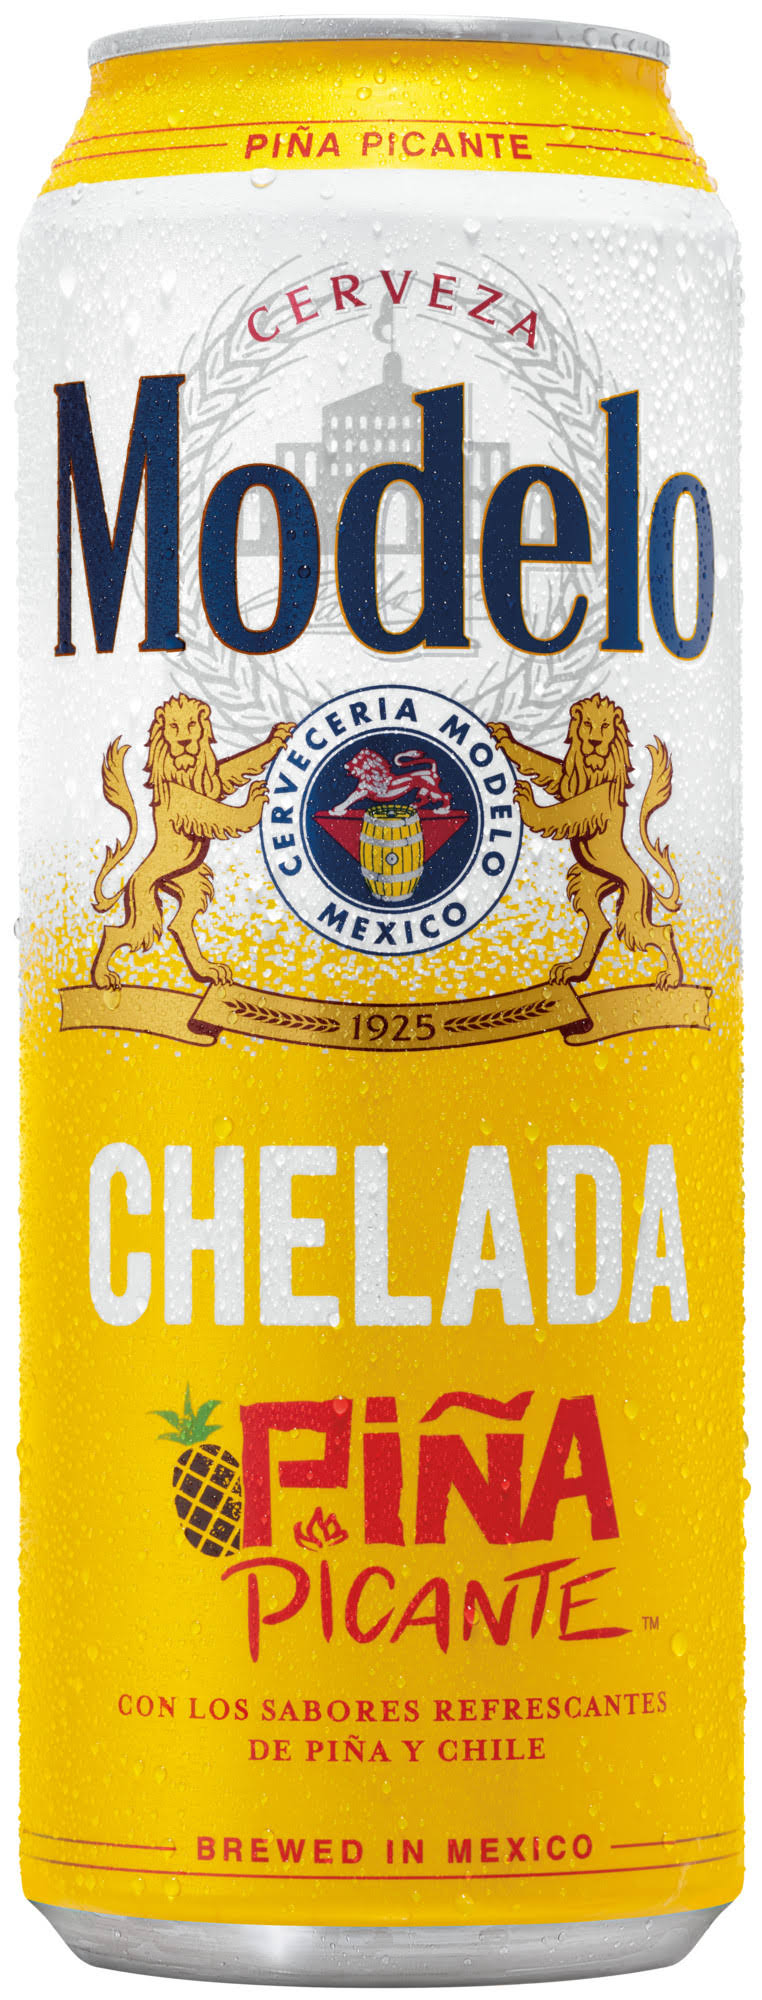 Modelo Chelada Beer, Pina Picante - 24 fl oz